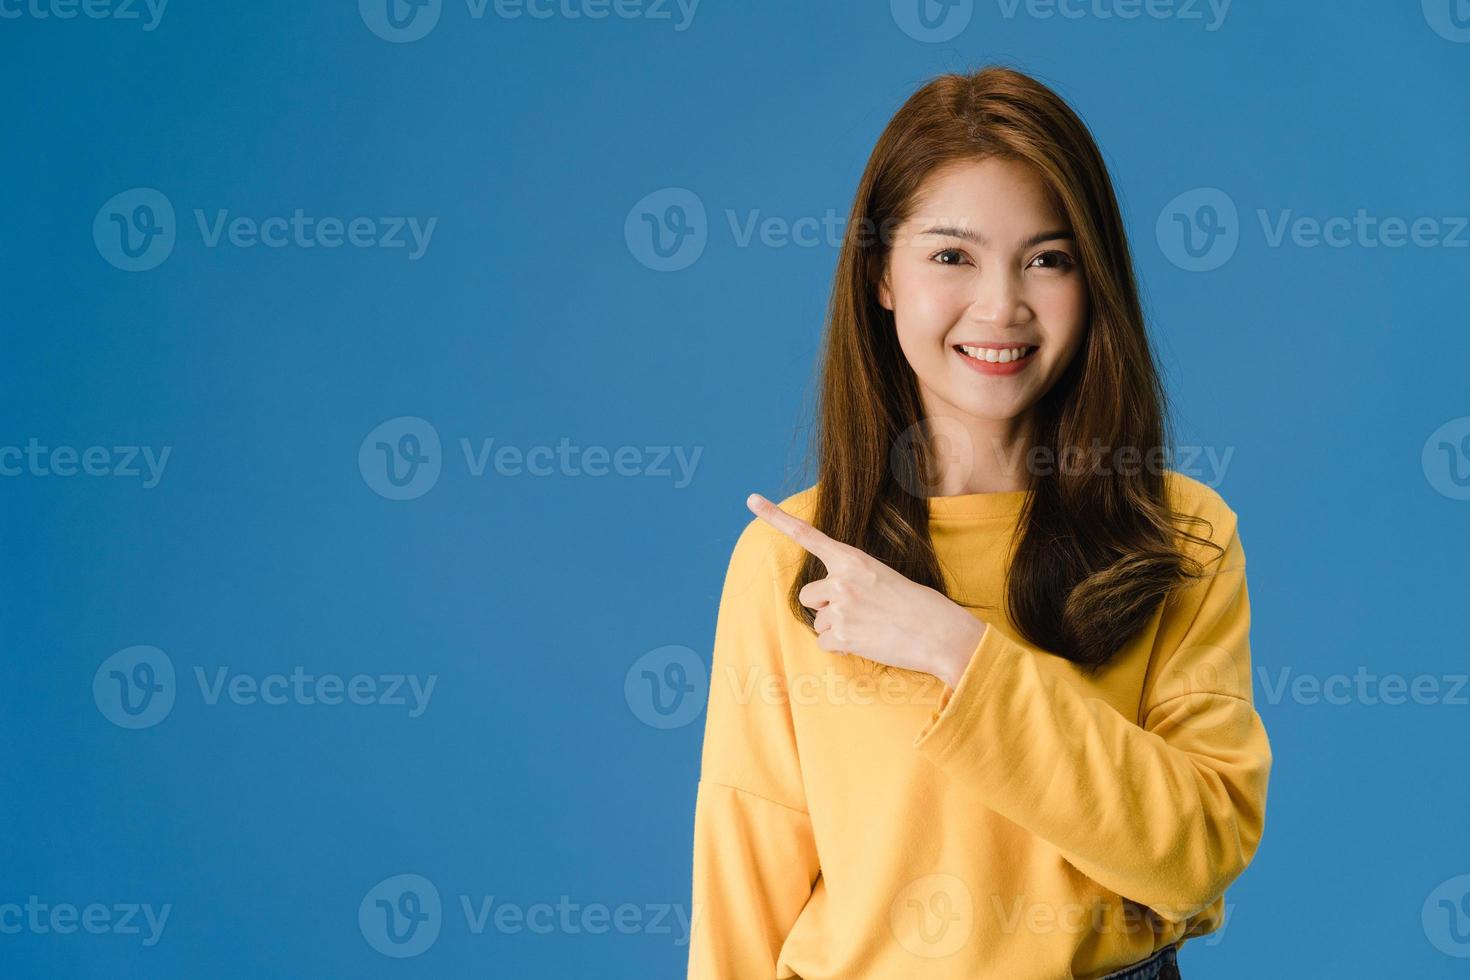 jonge Aziatische dame lachend met vrolijke uitdrukking blauwe achtergrond. foto